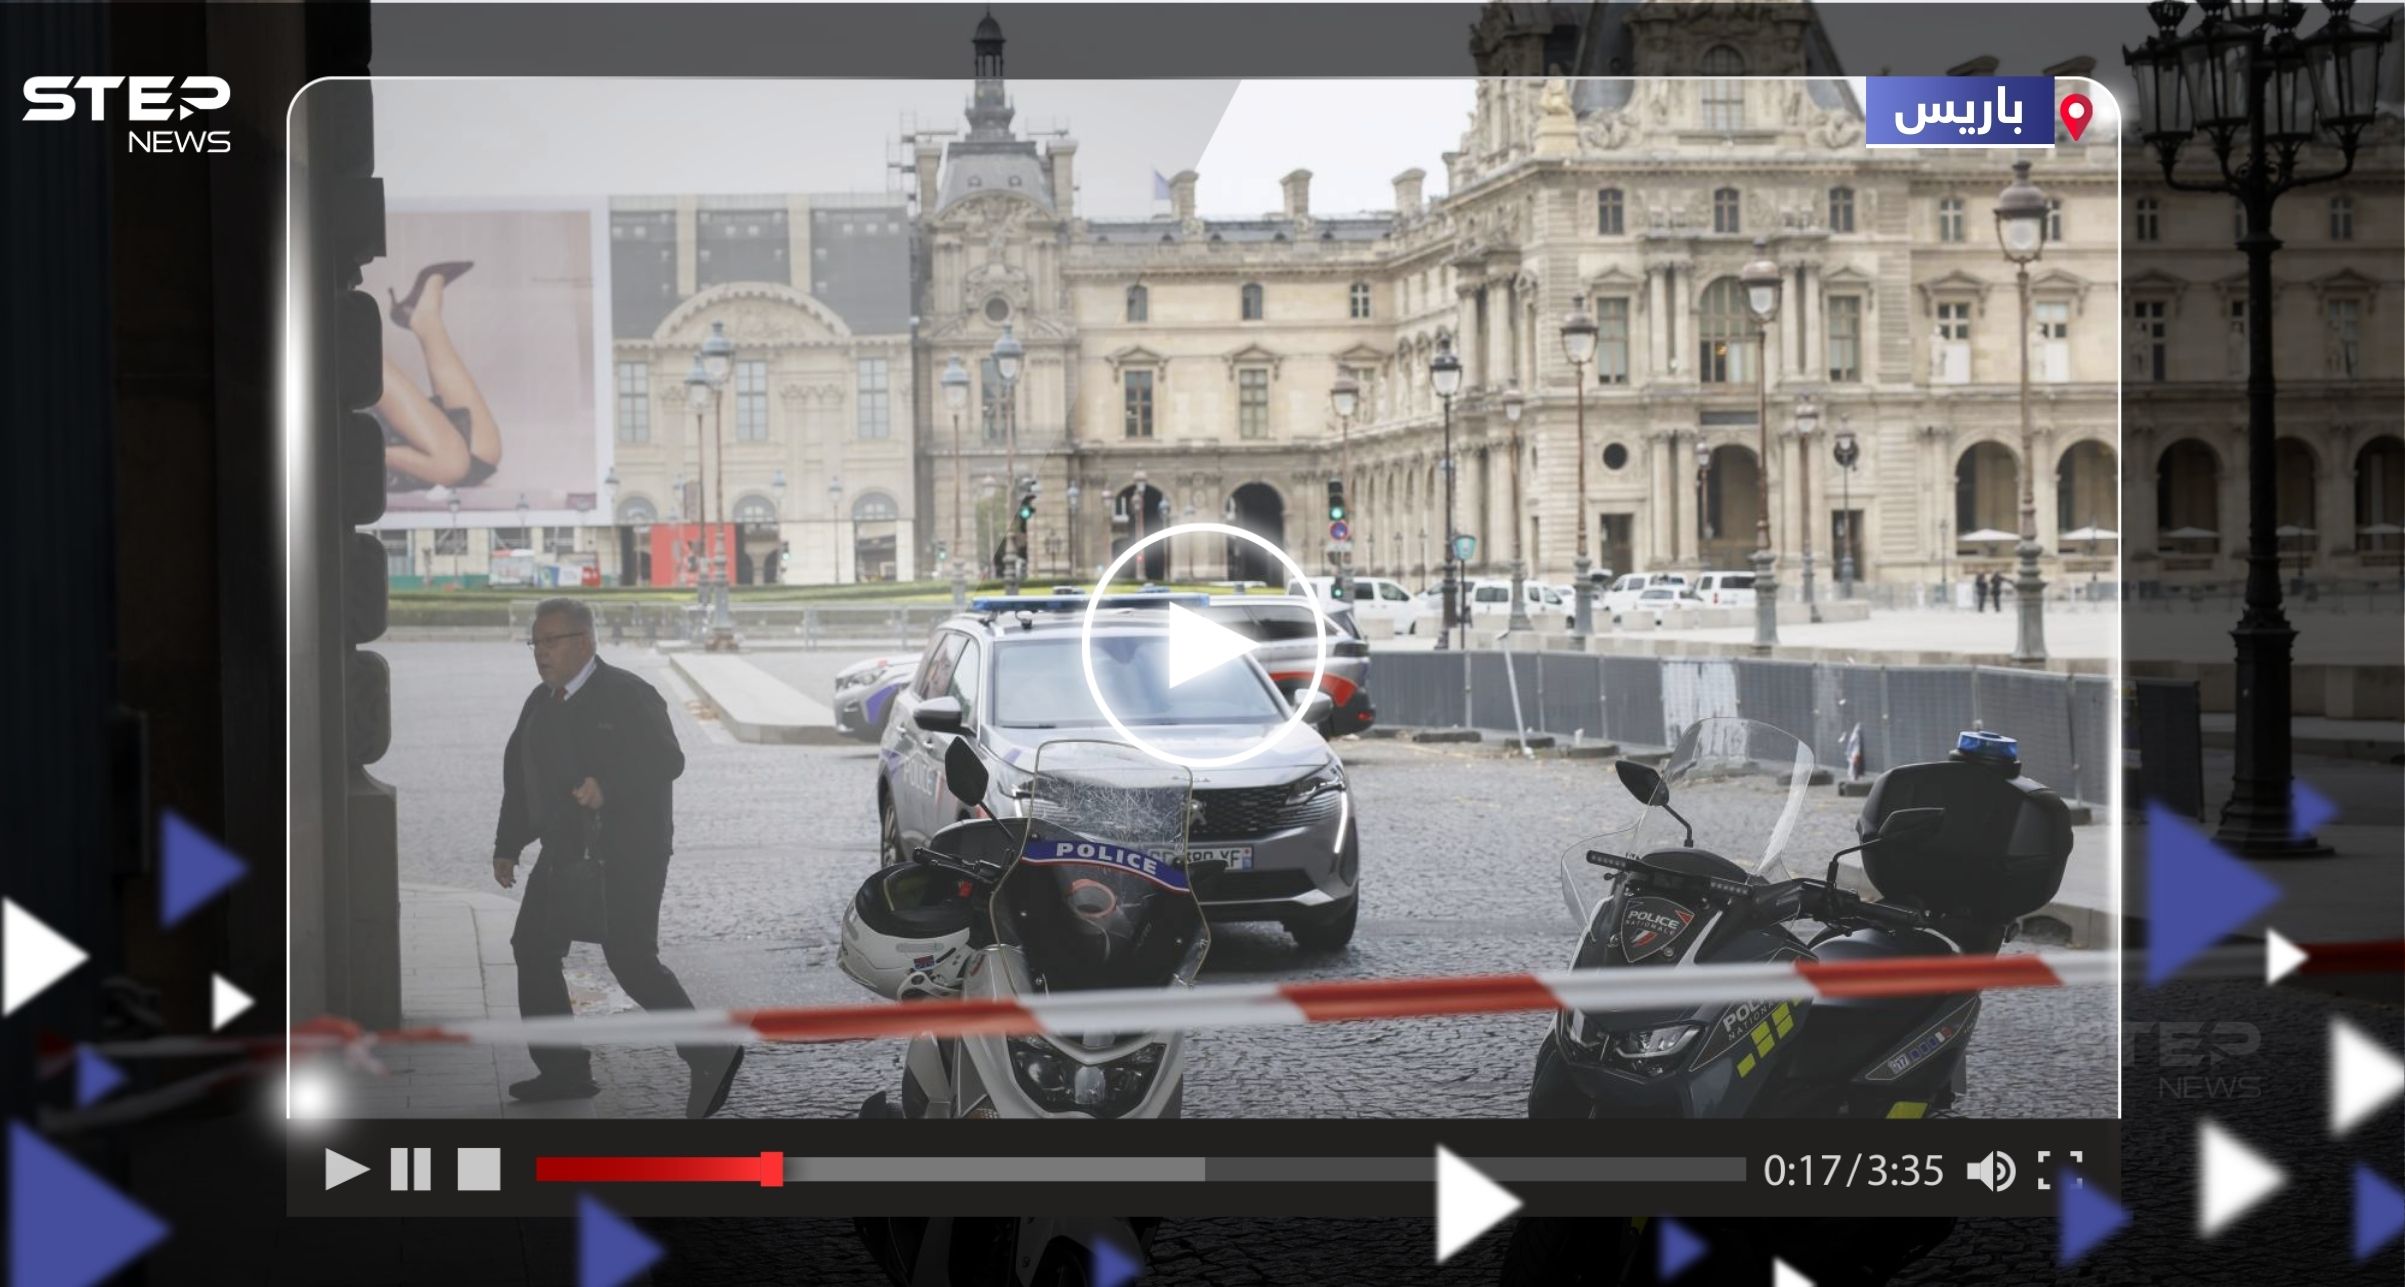 بعد تهديد بوجود قنبلة.. شاهد لحظة إخلاء متحف اللوفر في فرنسا وإغلاق قصر فرساي